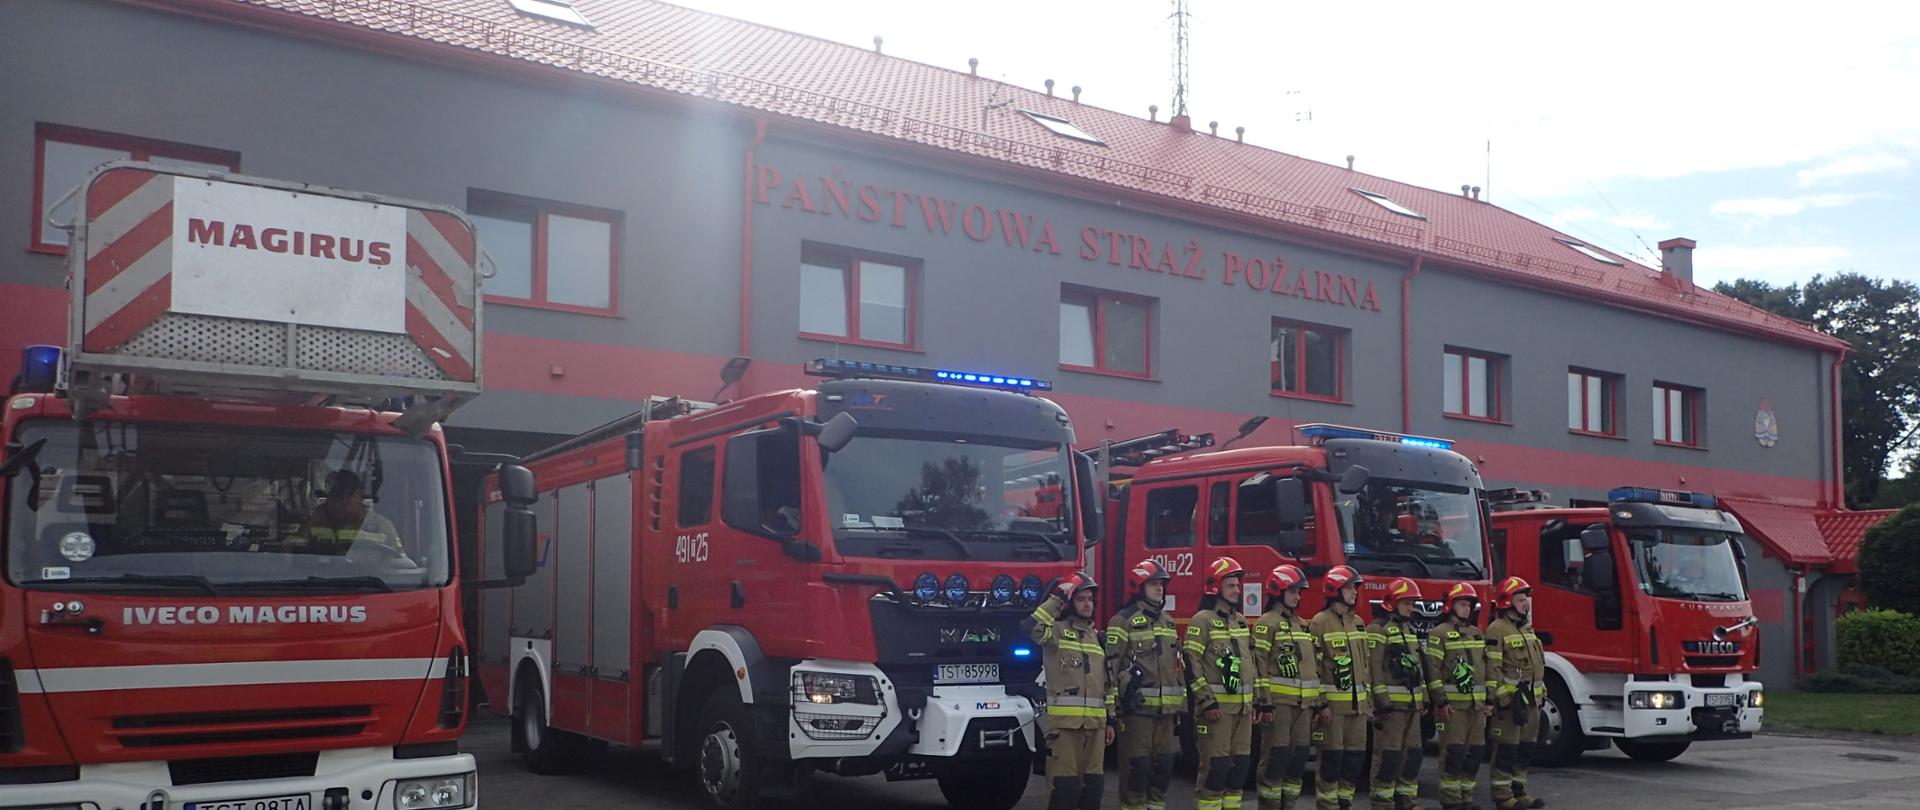 Strażacy oddający honory bohaterom powstania warszawskiego, w tle wozy bojowe oraz budynek KP PSP